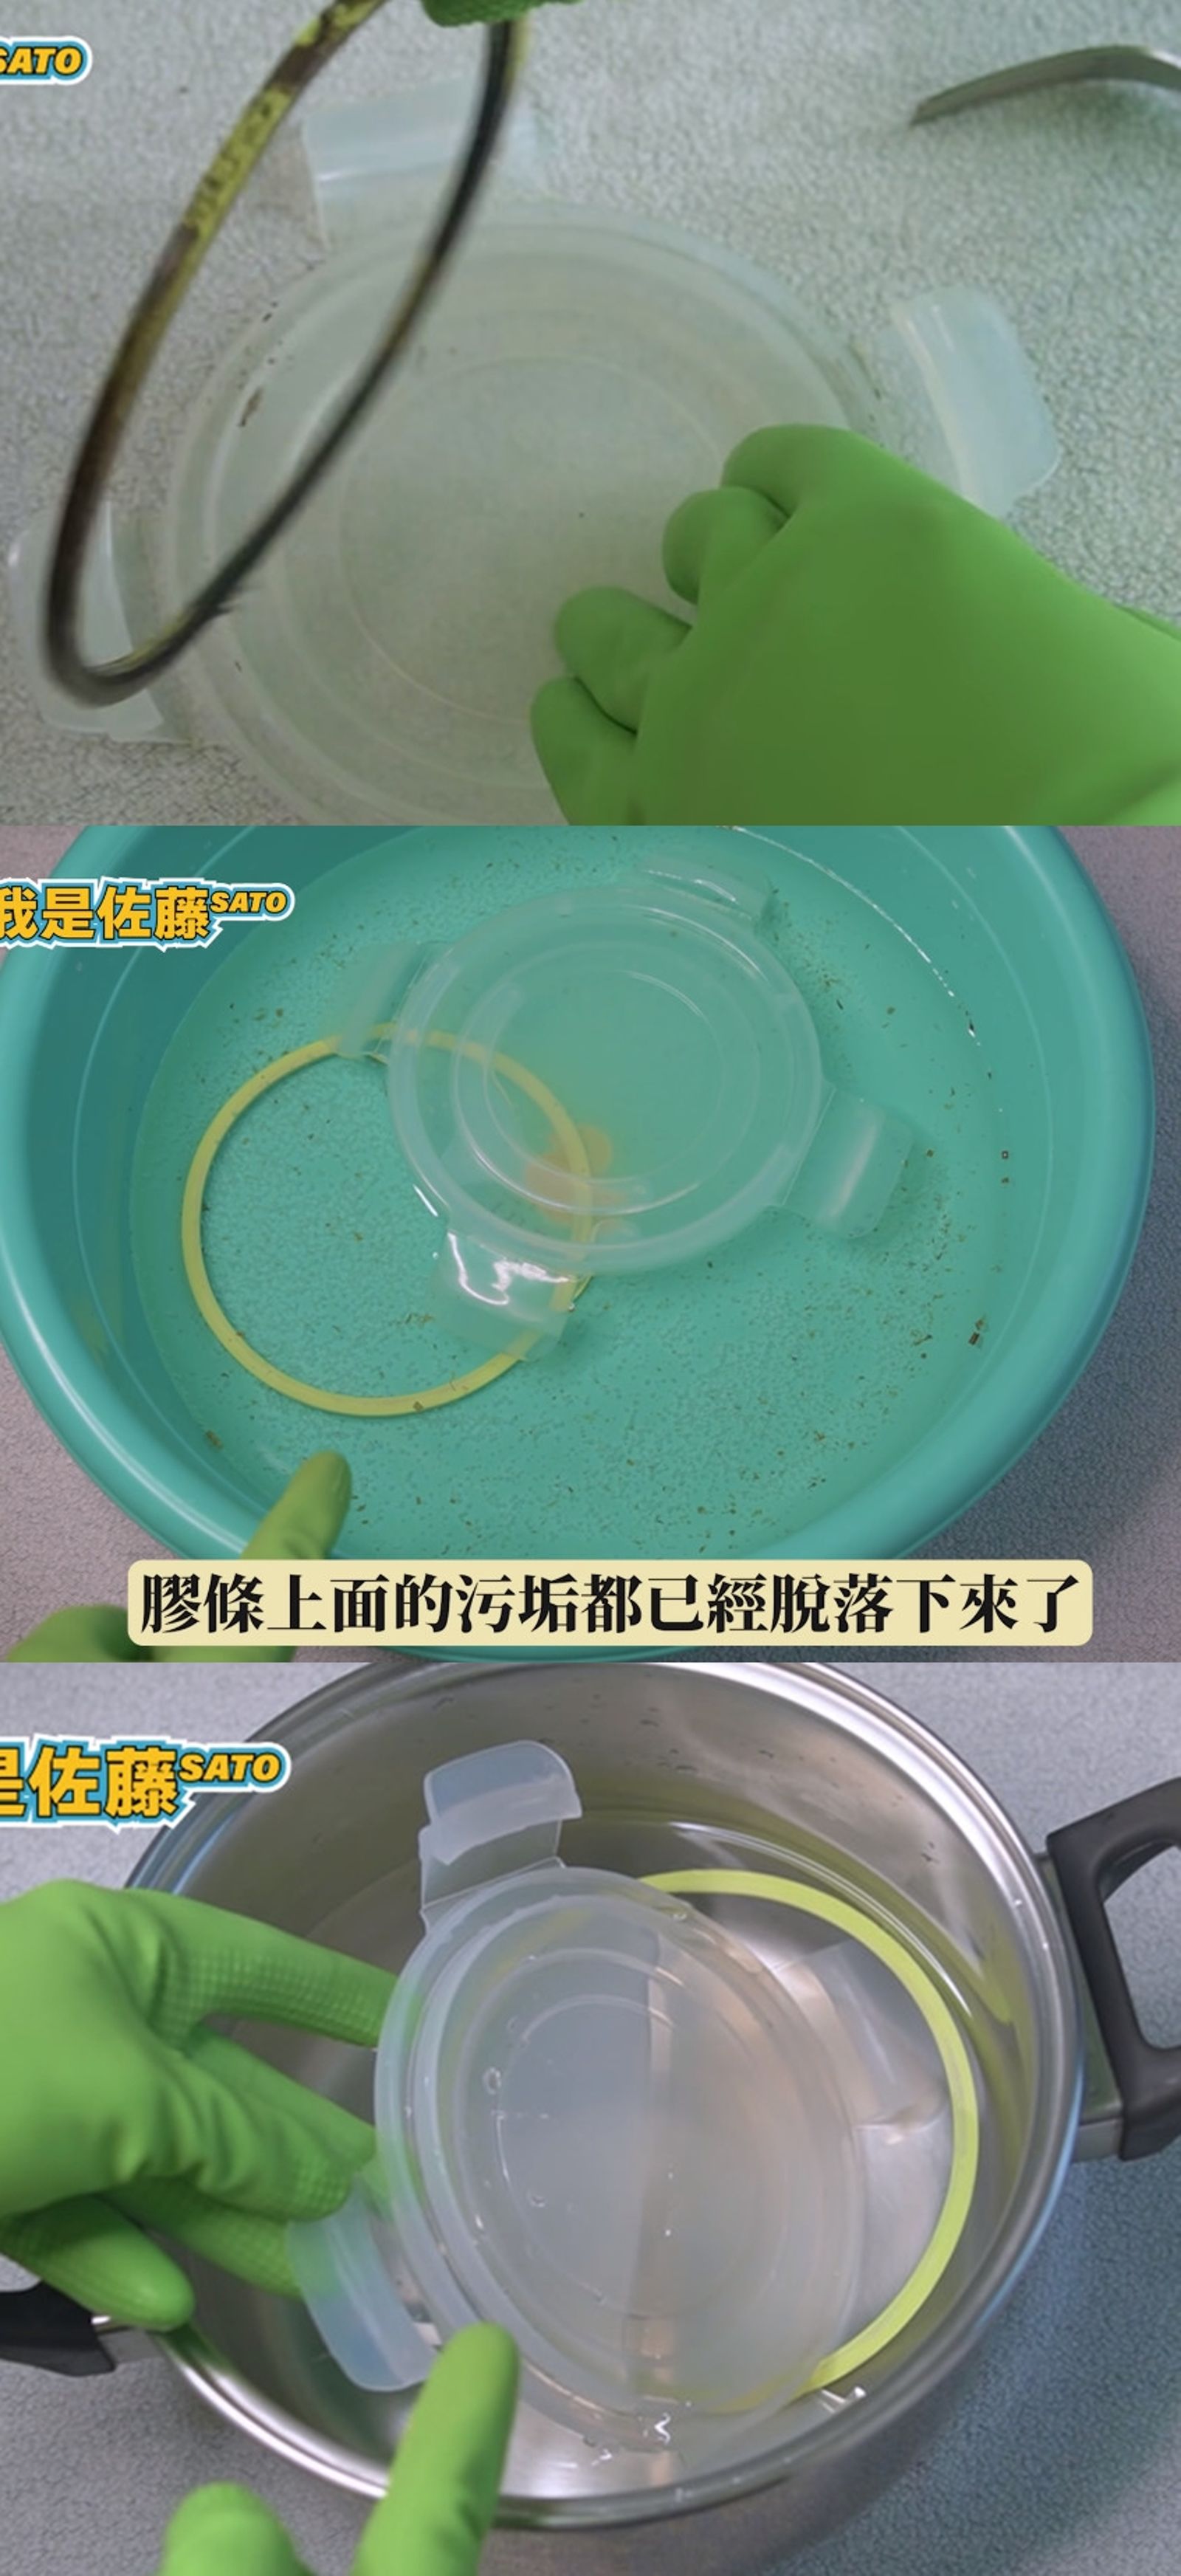 佐藤SATO示範輕鬆清潔發霉膠條的步驟。（翻攝YT頻道「我是佐藤SATO」）